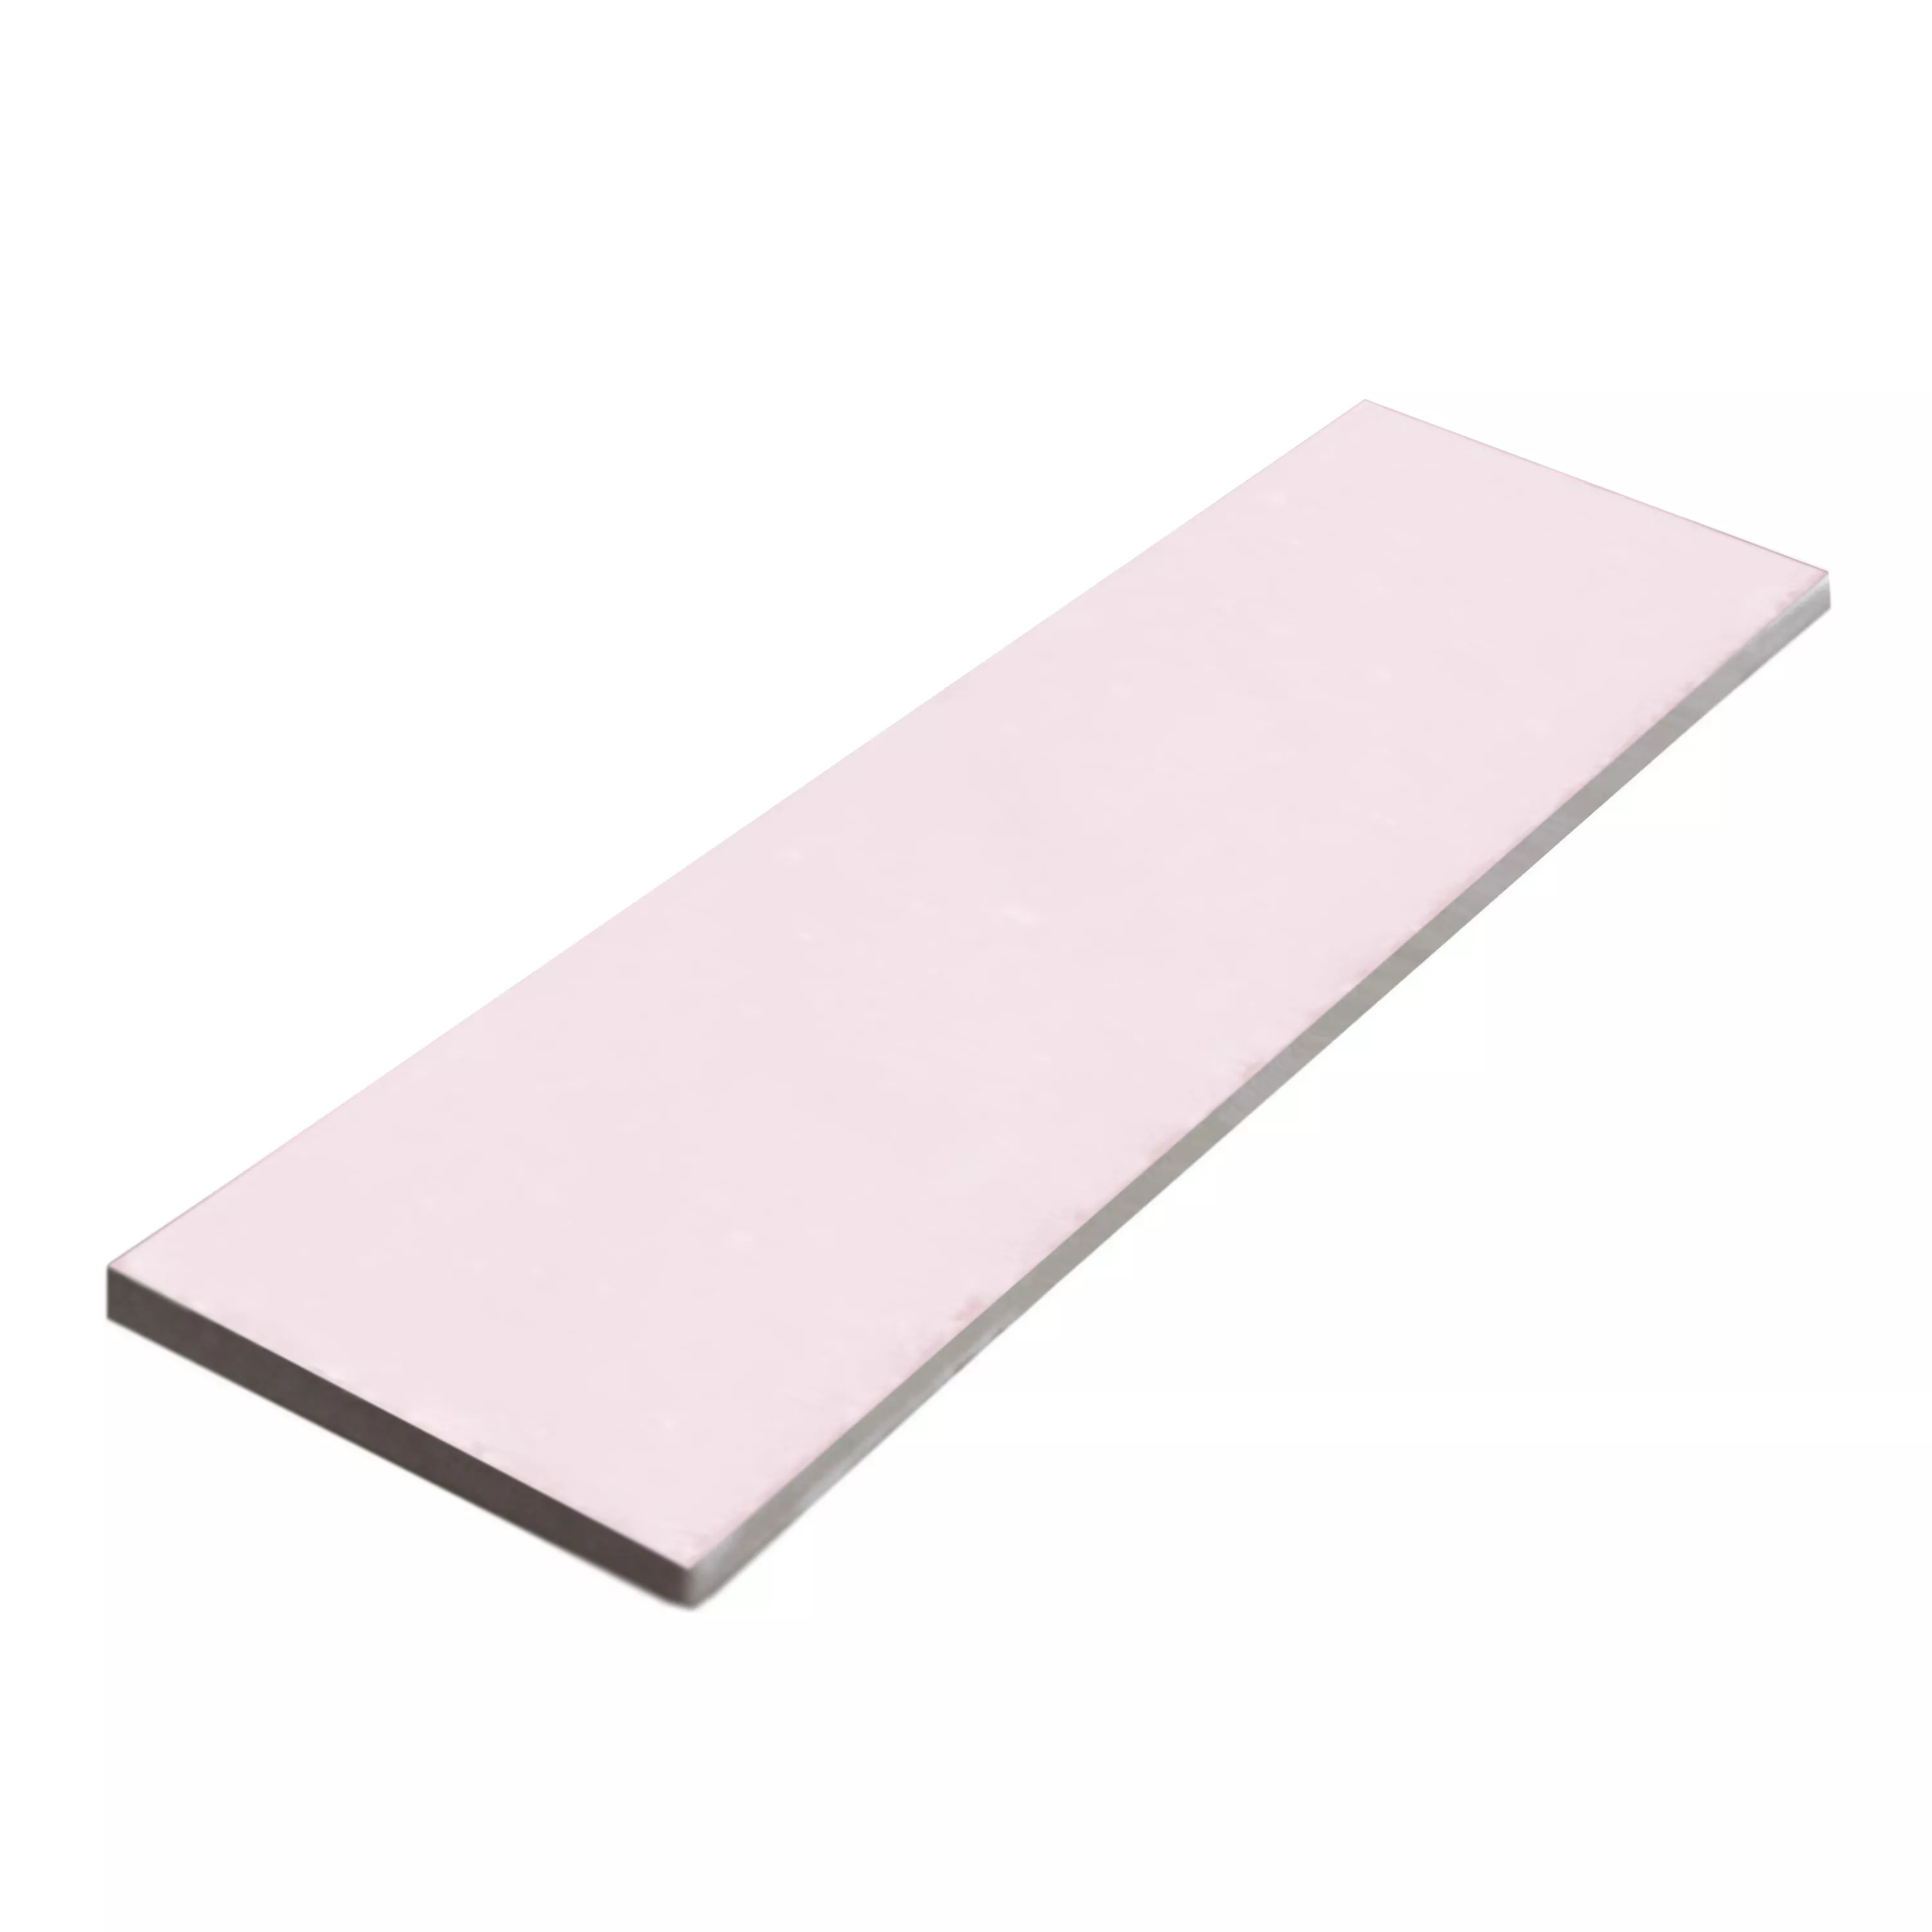 Vzorek Nástěnné Obklady First Lesklá 7,5x30cm Růžová Pink